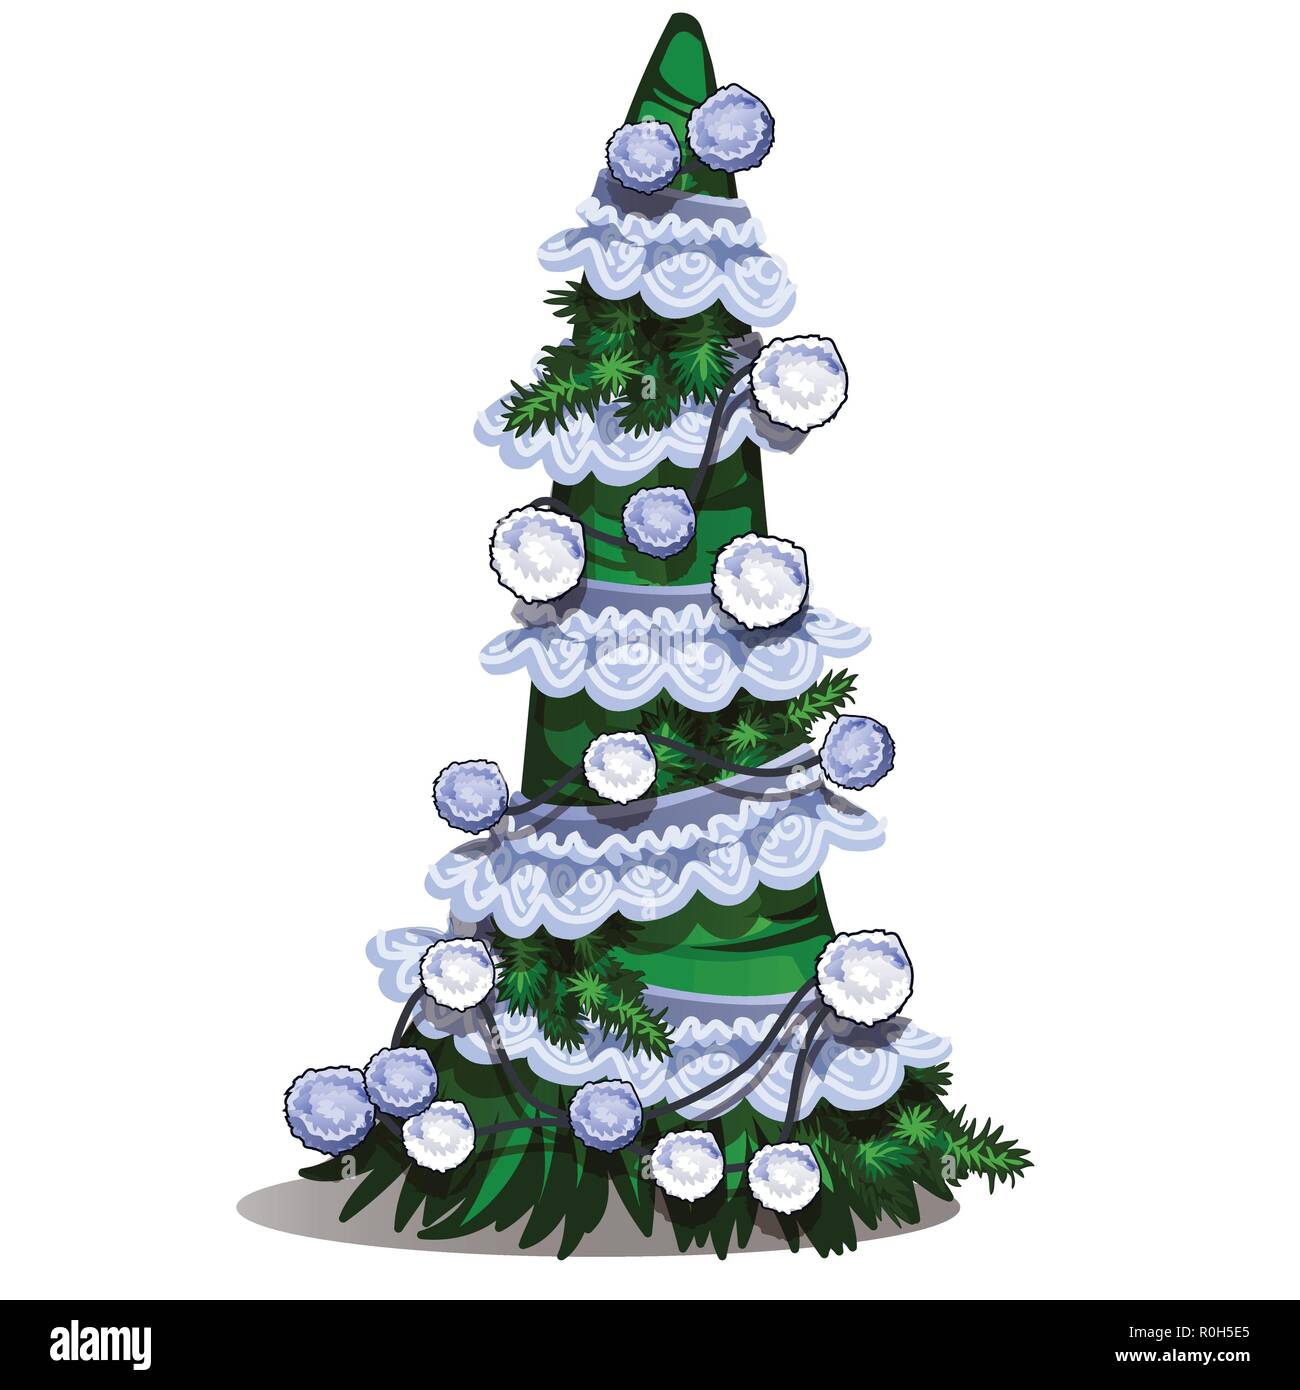 Cartoon Formgehölze in Form eines Kegels Weihnachtsbaum mit Weihnachtskugel, weiße Spitze Band und Pompons. Skizze für Grußkarten, festliche Poster, Party Einladung. Attribut von Weihnachten und das neue Jahr. Vektor Stock Vektor